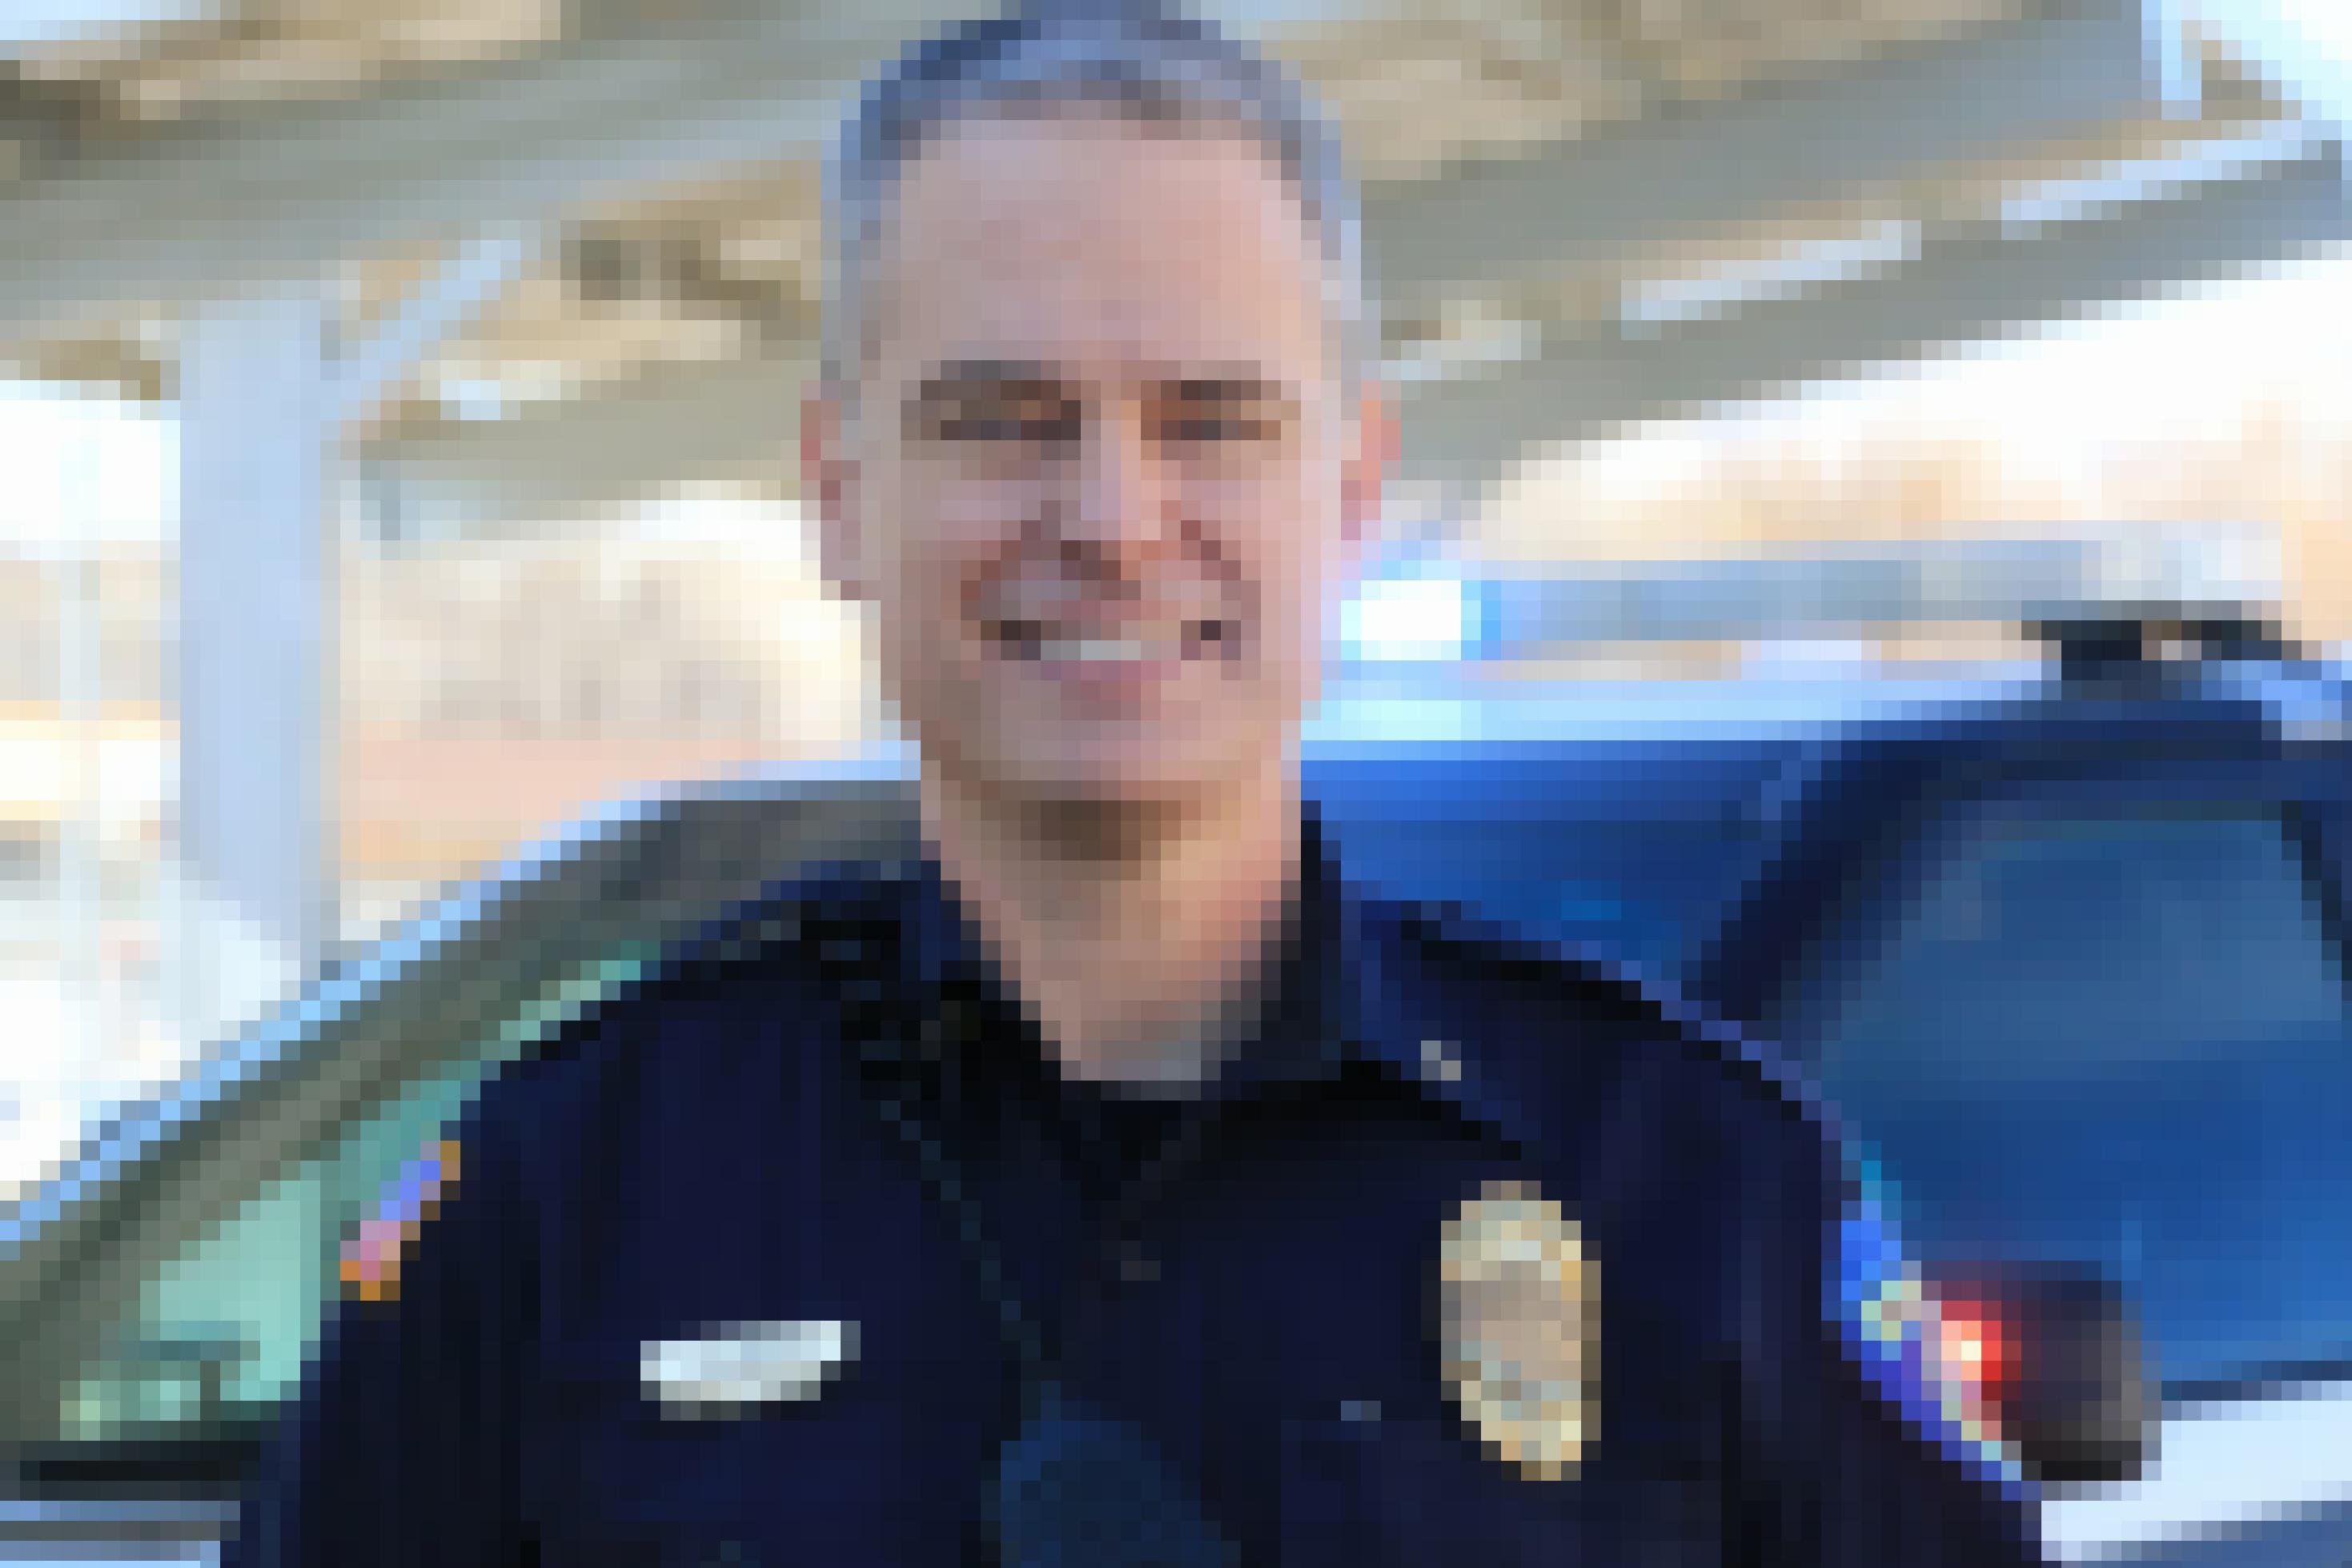 Ein Polizist in Uniform lächelt in die Kamera. Im Hintergrund steht ein Einsatzwagen mit angeschalteten Signalleuchten.